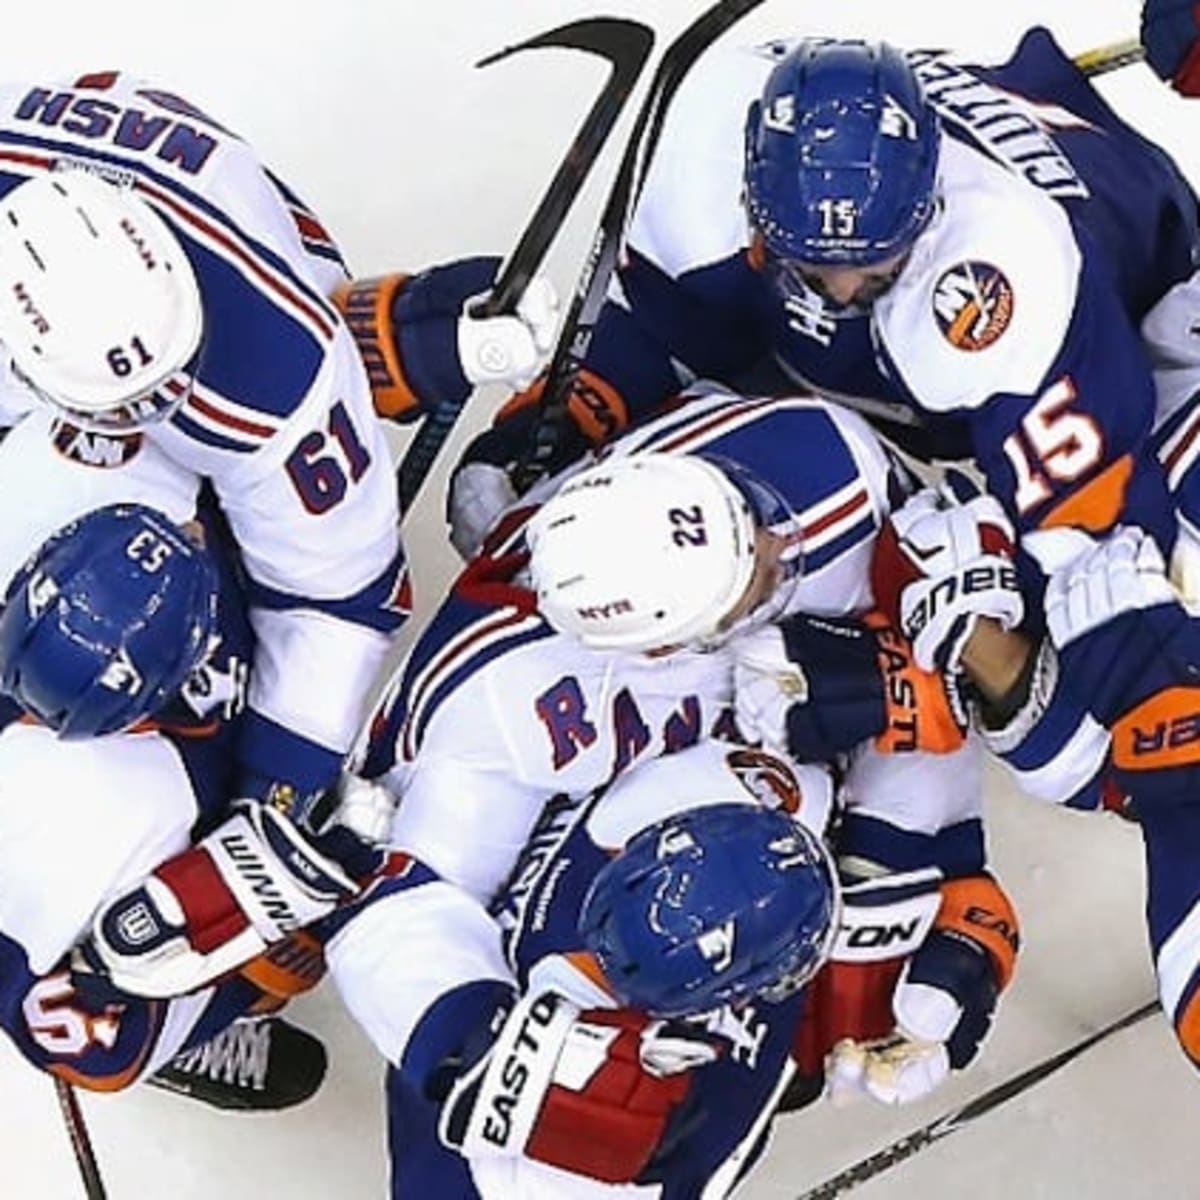 Rangers Fans Smarter Than Islanders Fans, Study Finds - Battle of